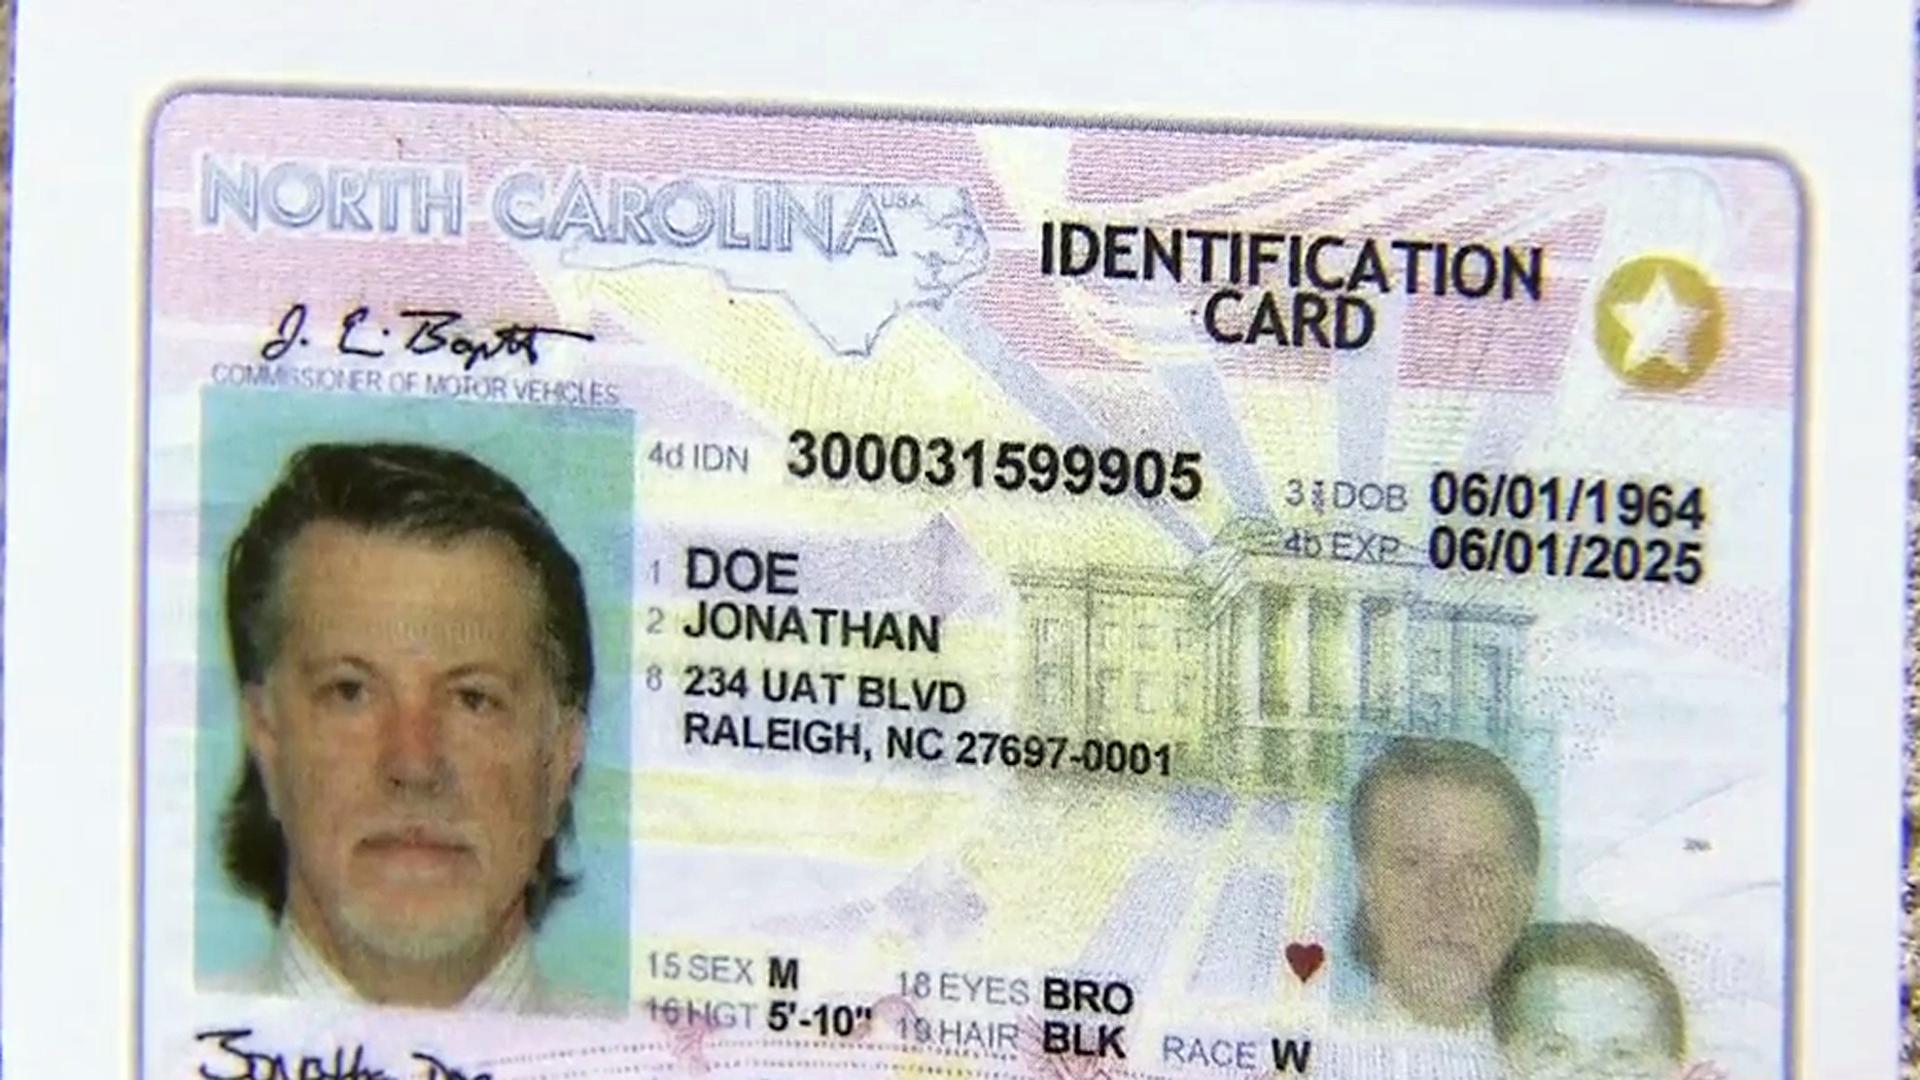 broome county dmv non drivers license id